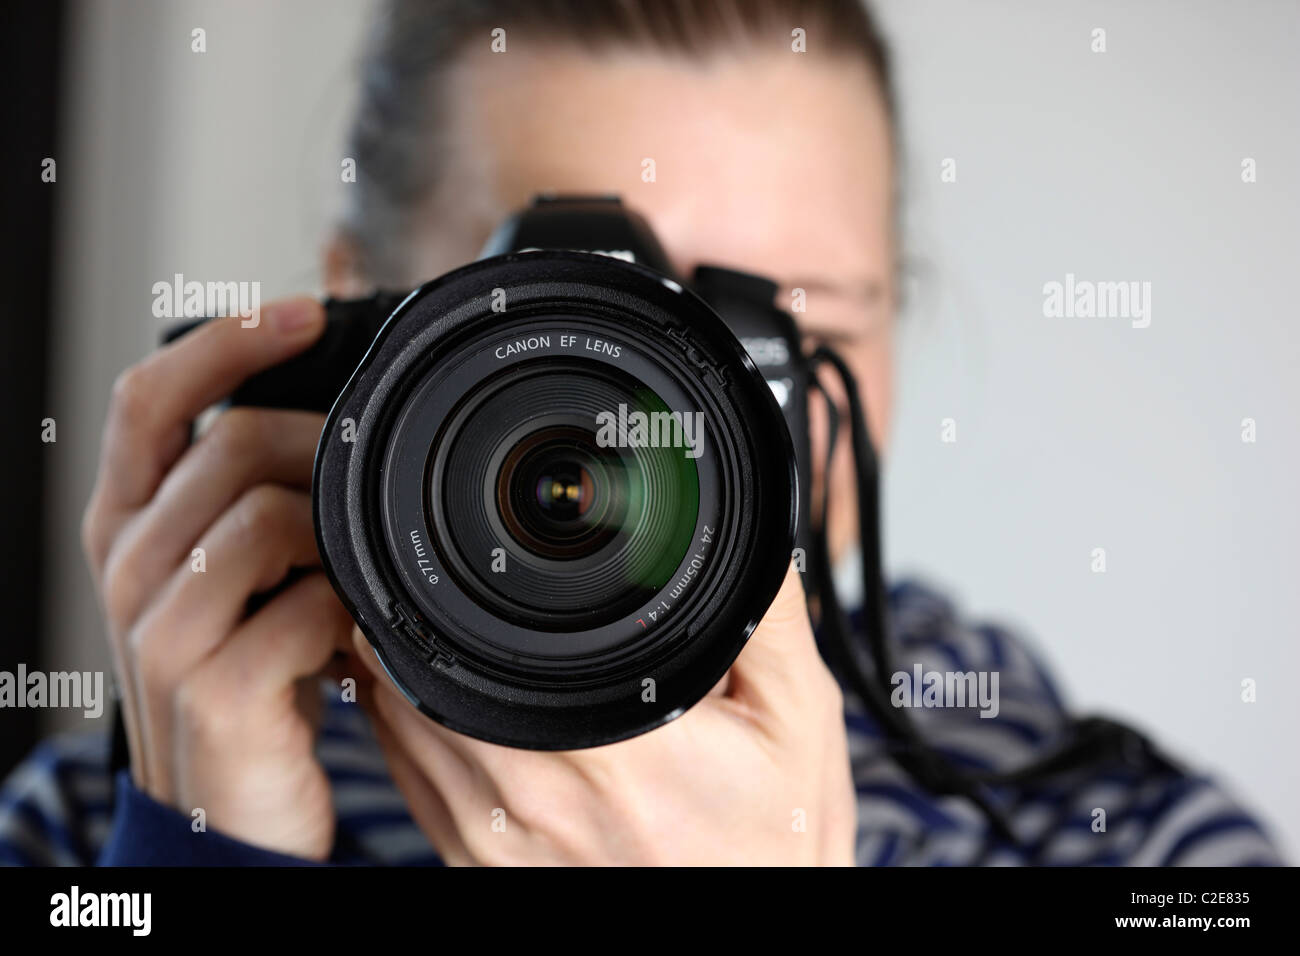 Personne, femme, regarde à travers le viseur d'un appareil photo numérique à objectif interchangeable. Banque D'Images